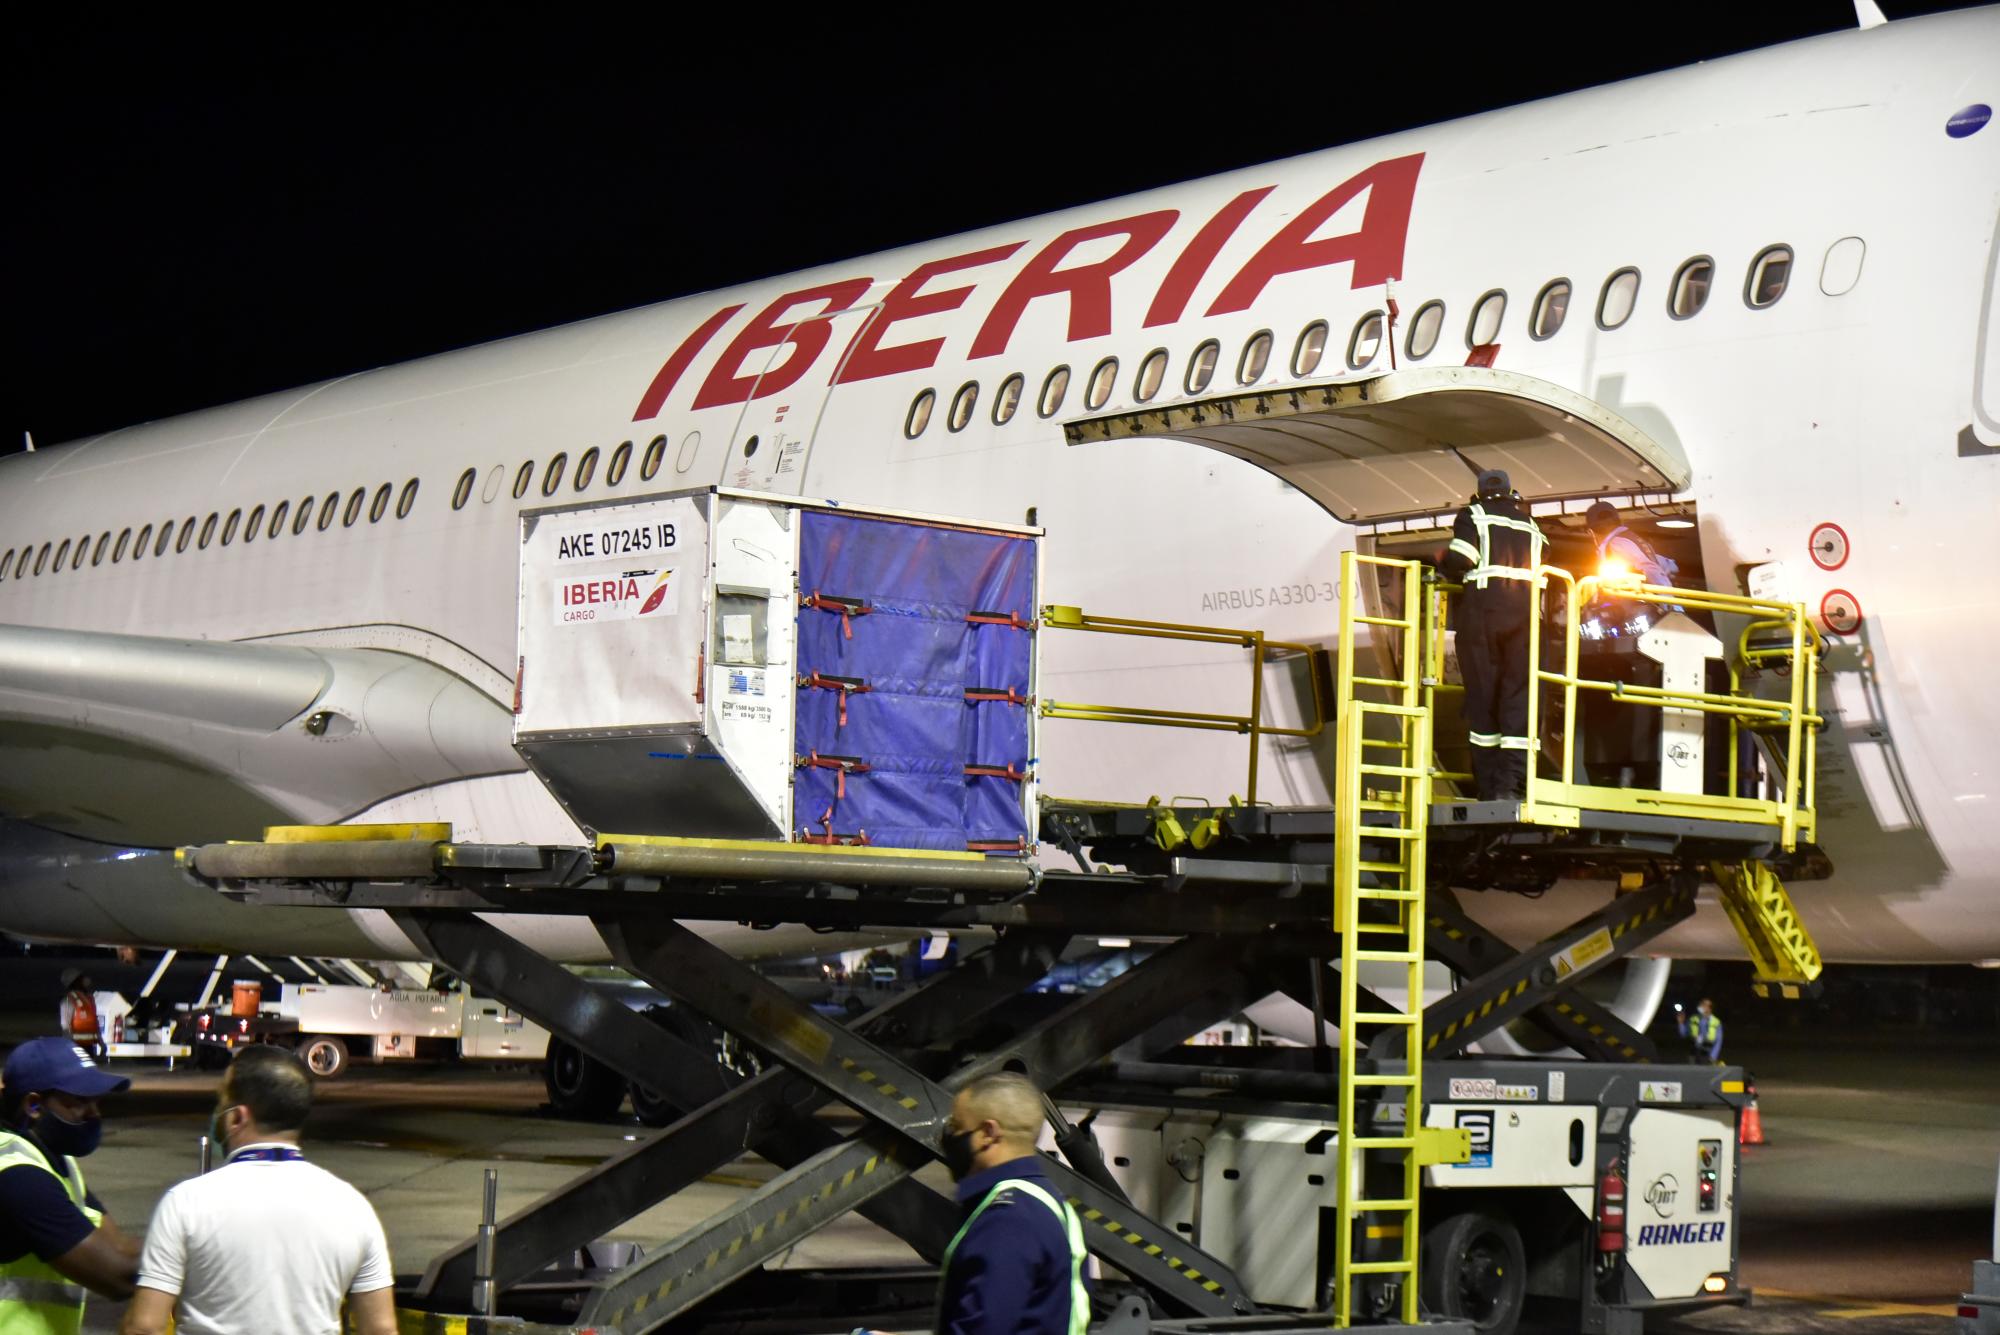 Vista del contenedor traído a la República Dominicana en un vuelo de Iberia con 20,000 dosis de vacunas anticovid, el 15 de febrero de 2020.